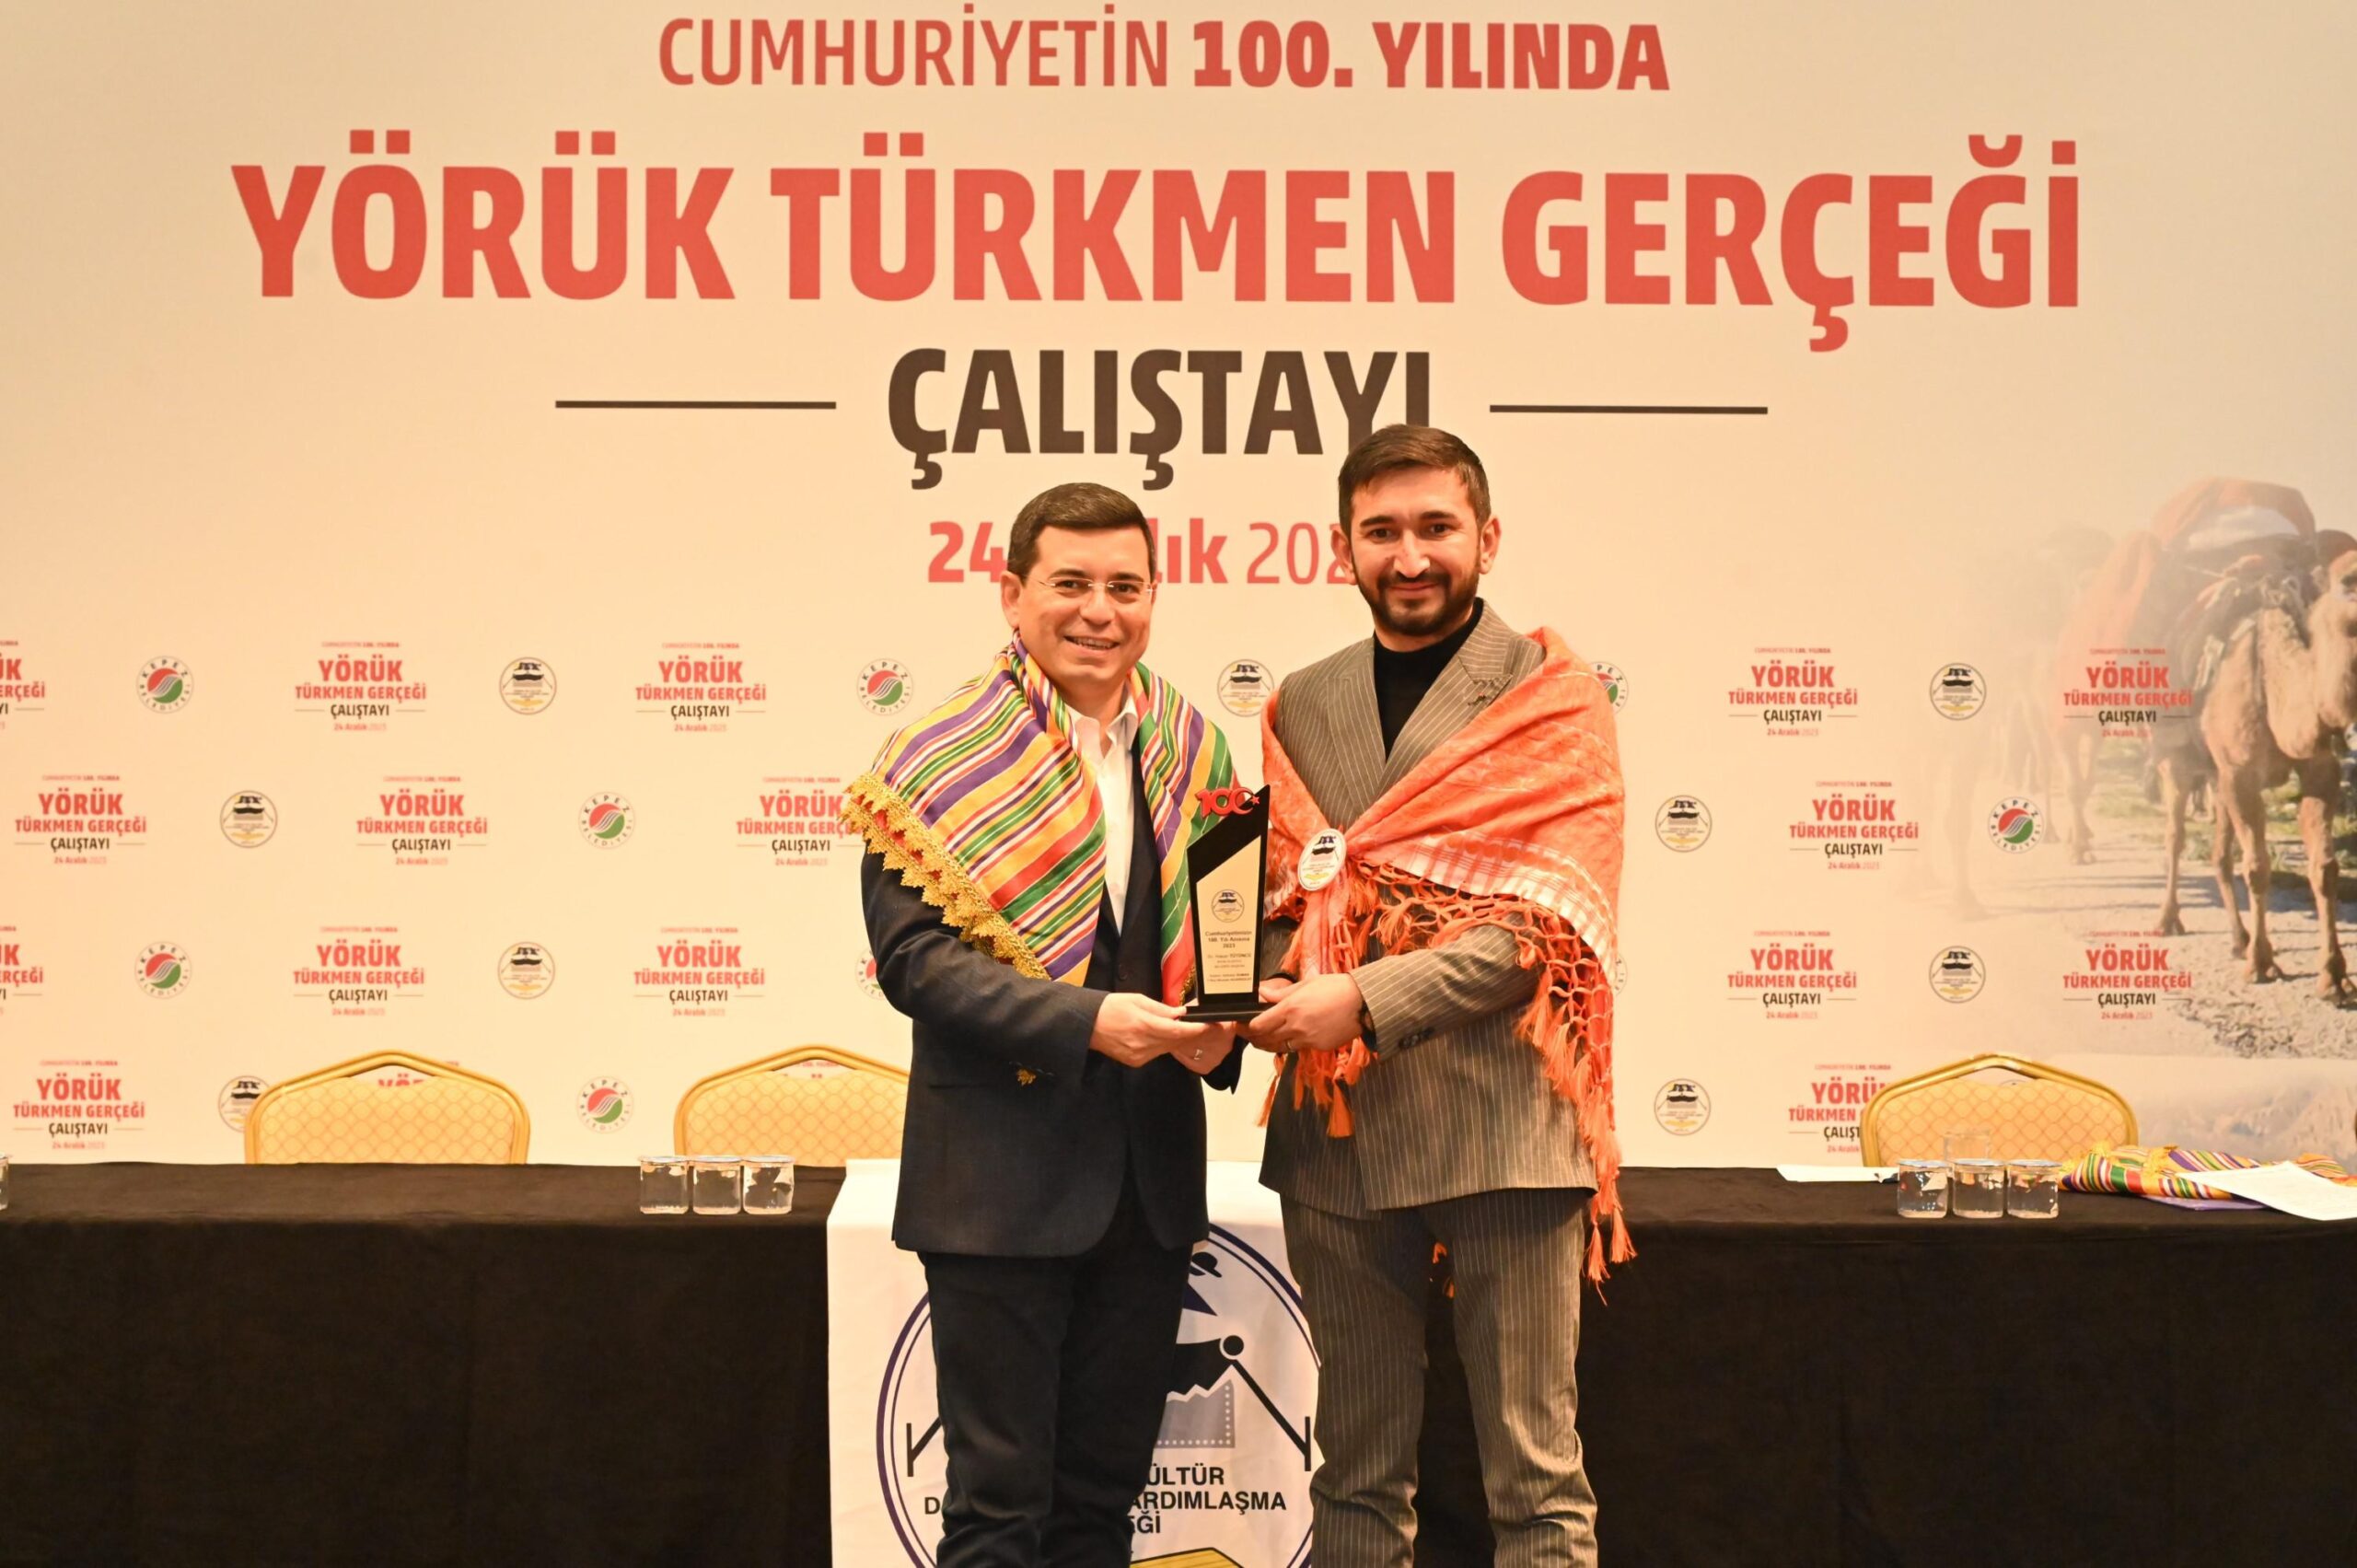 Tütüncü, Yörük Türkmen Gerçeği Çalıştayı’na katıldı